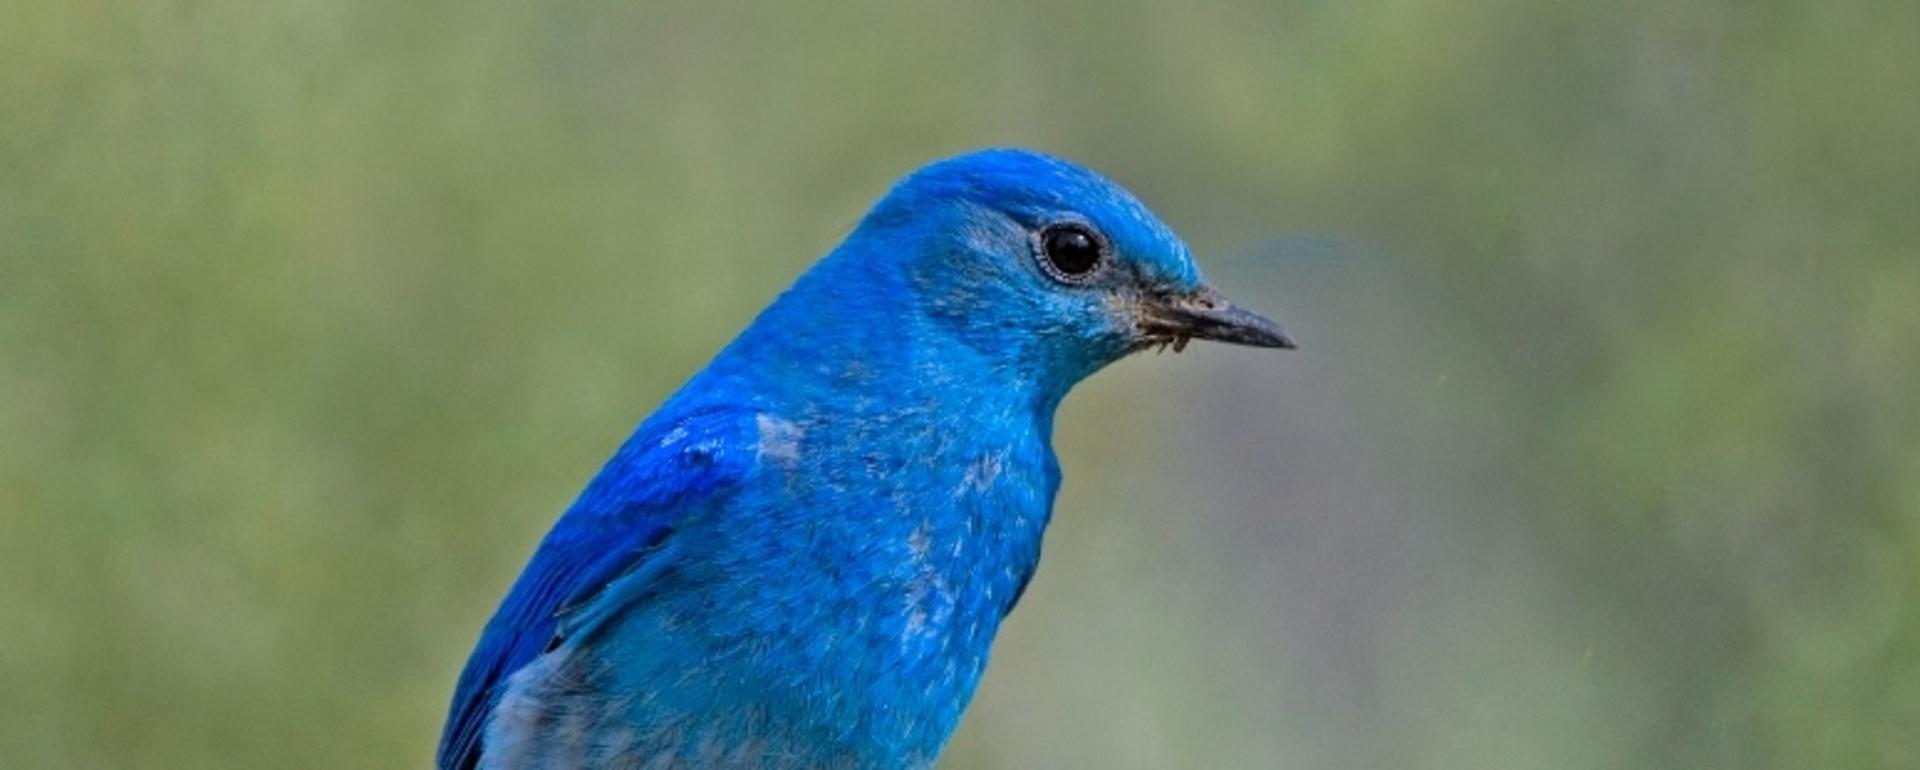 A mountain bluebird